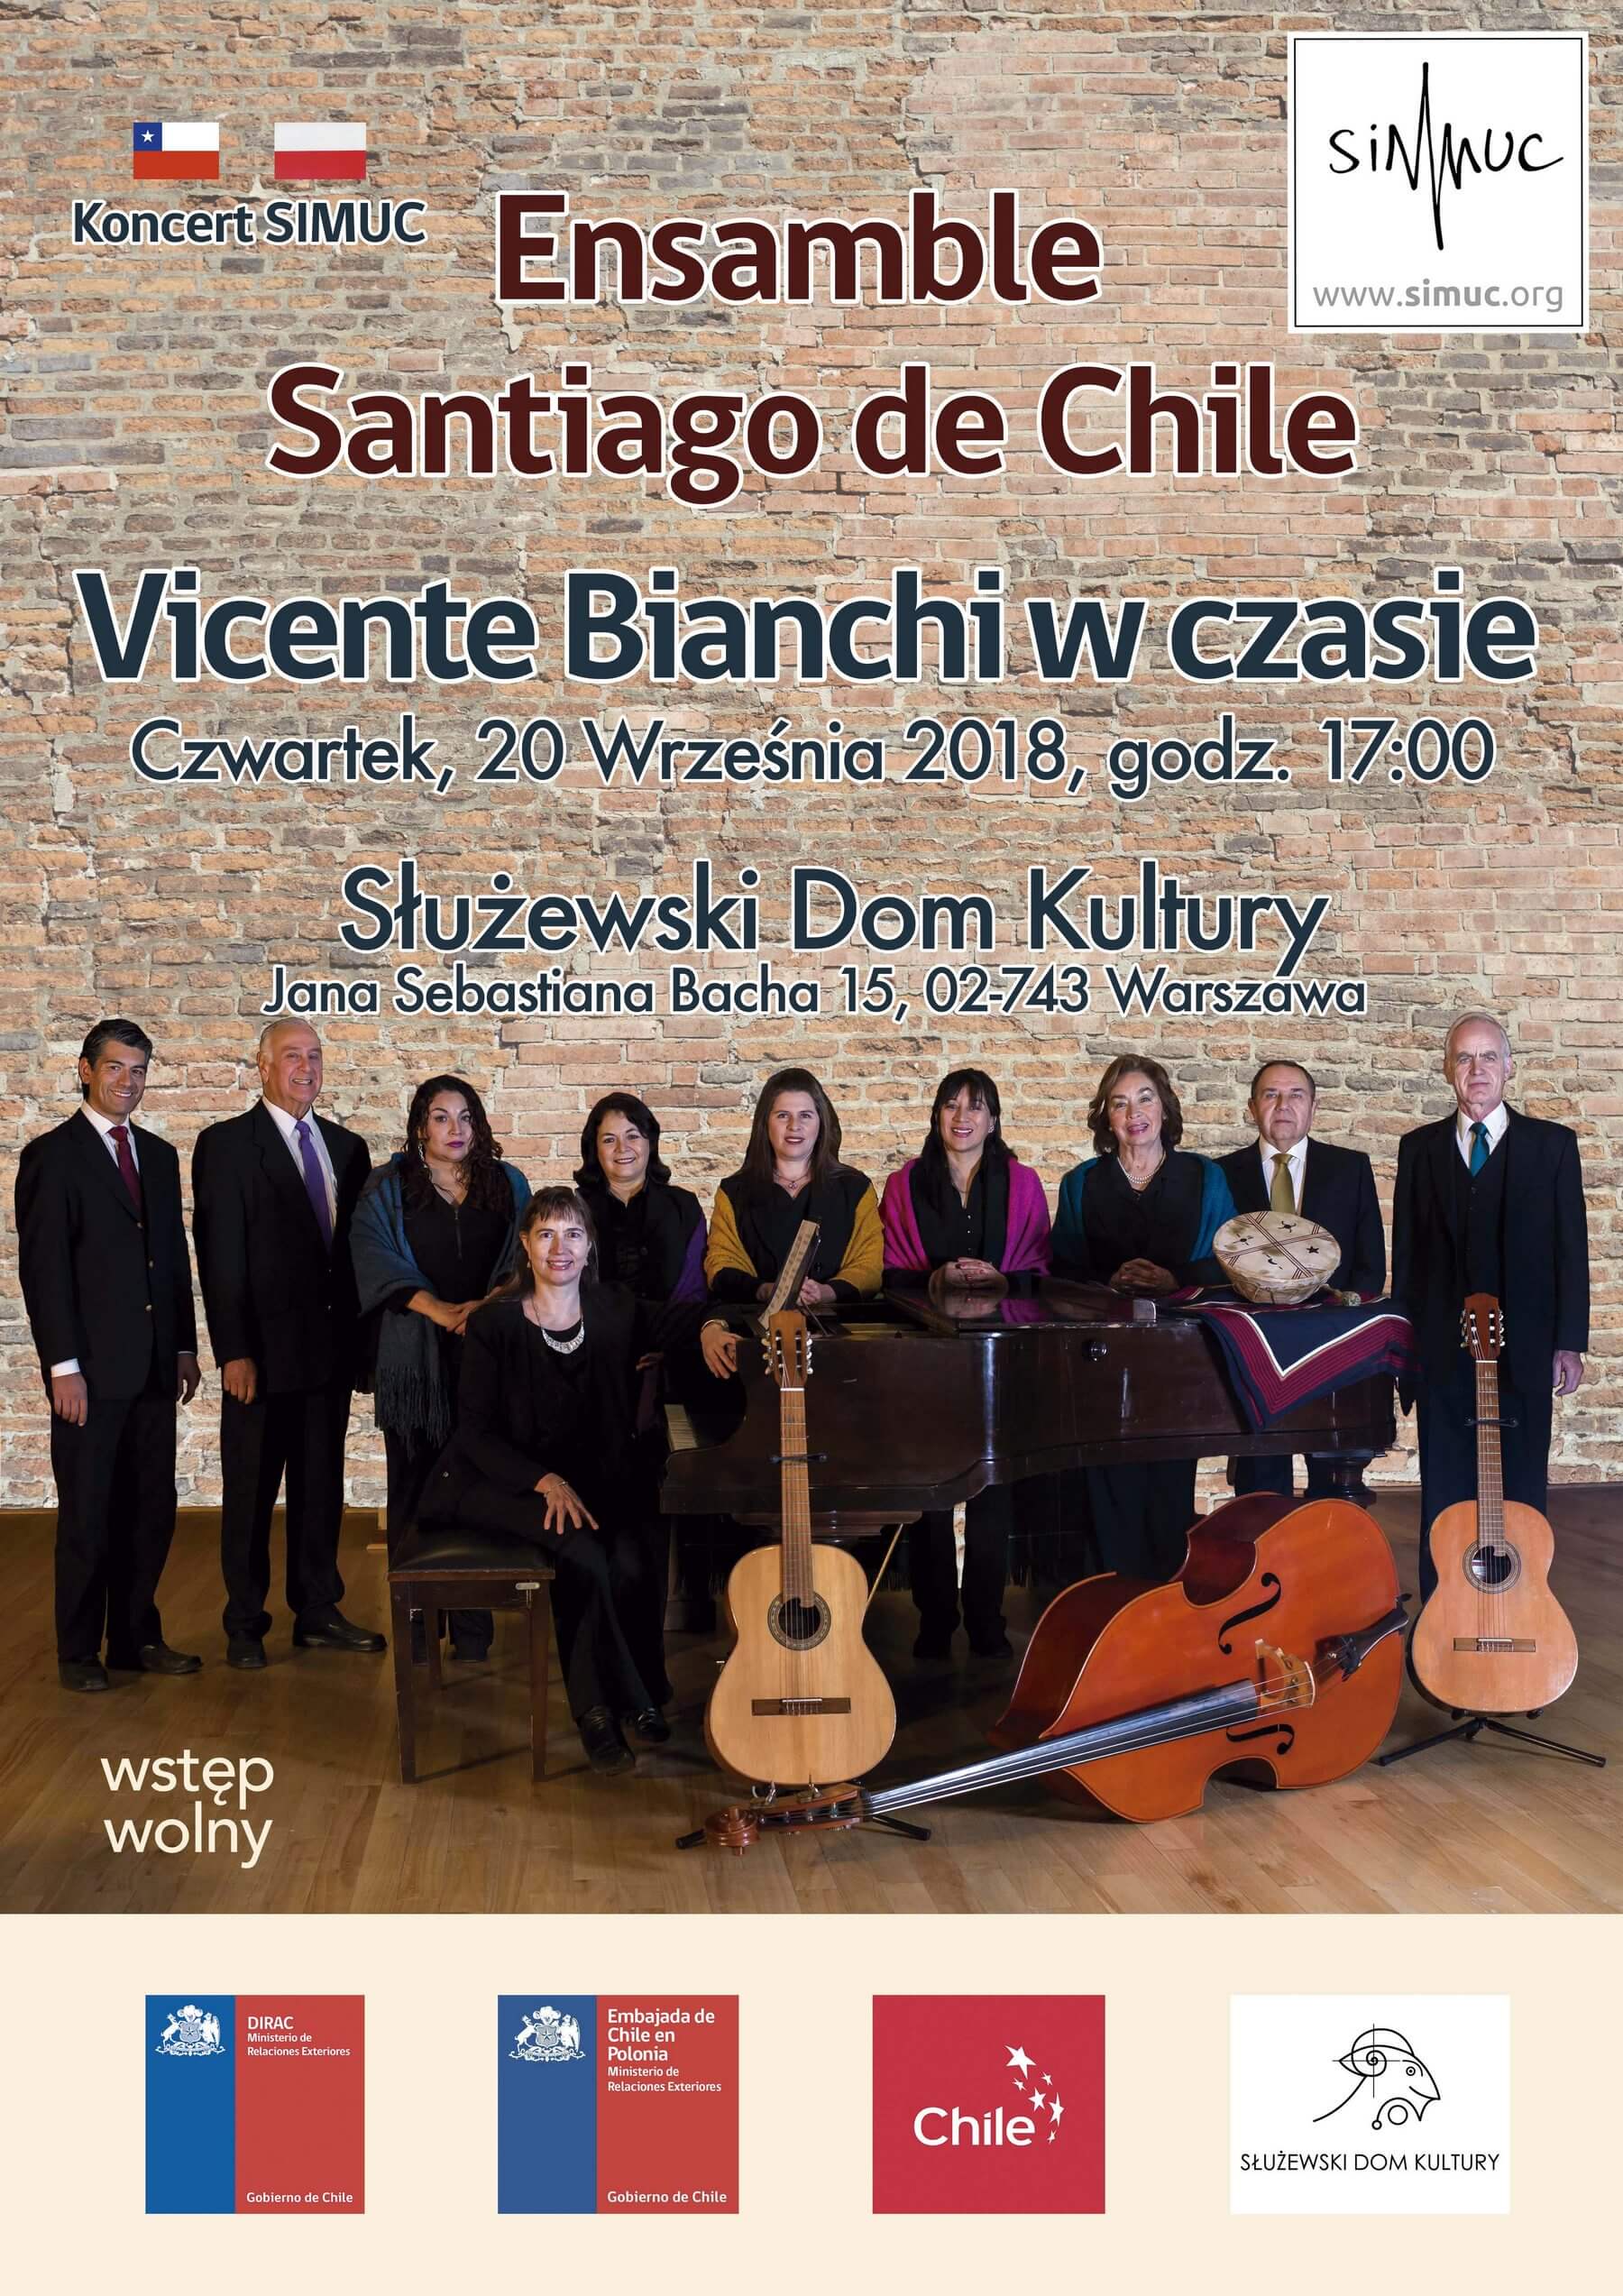 SIMUC-Concert: Ensamble Santiago de Chile in Poland